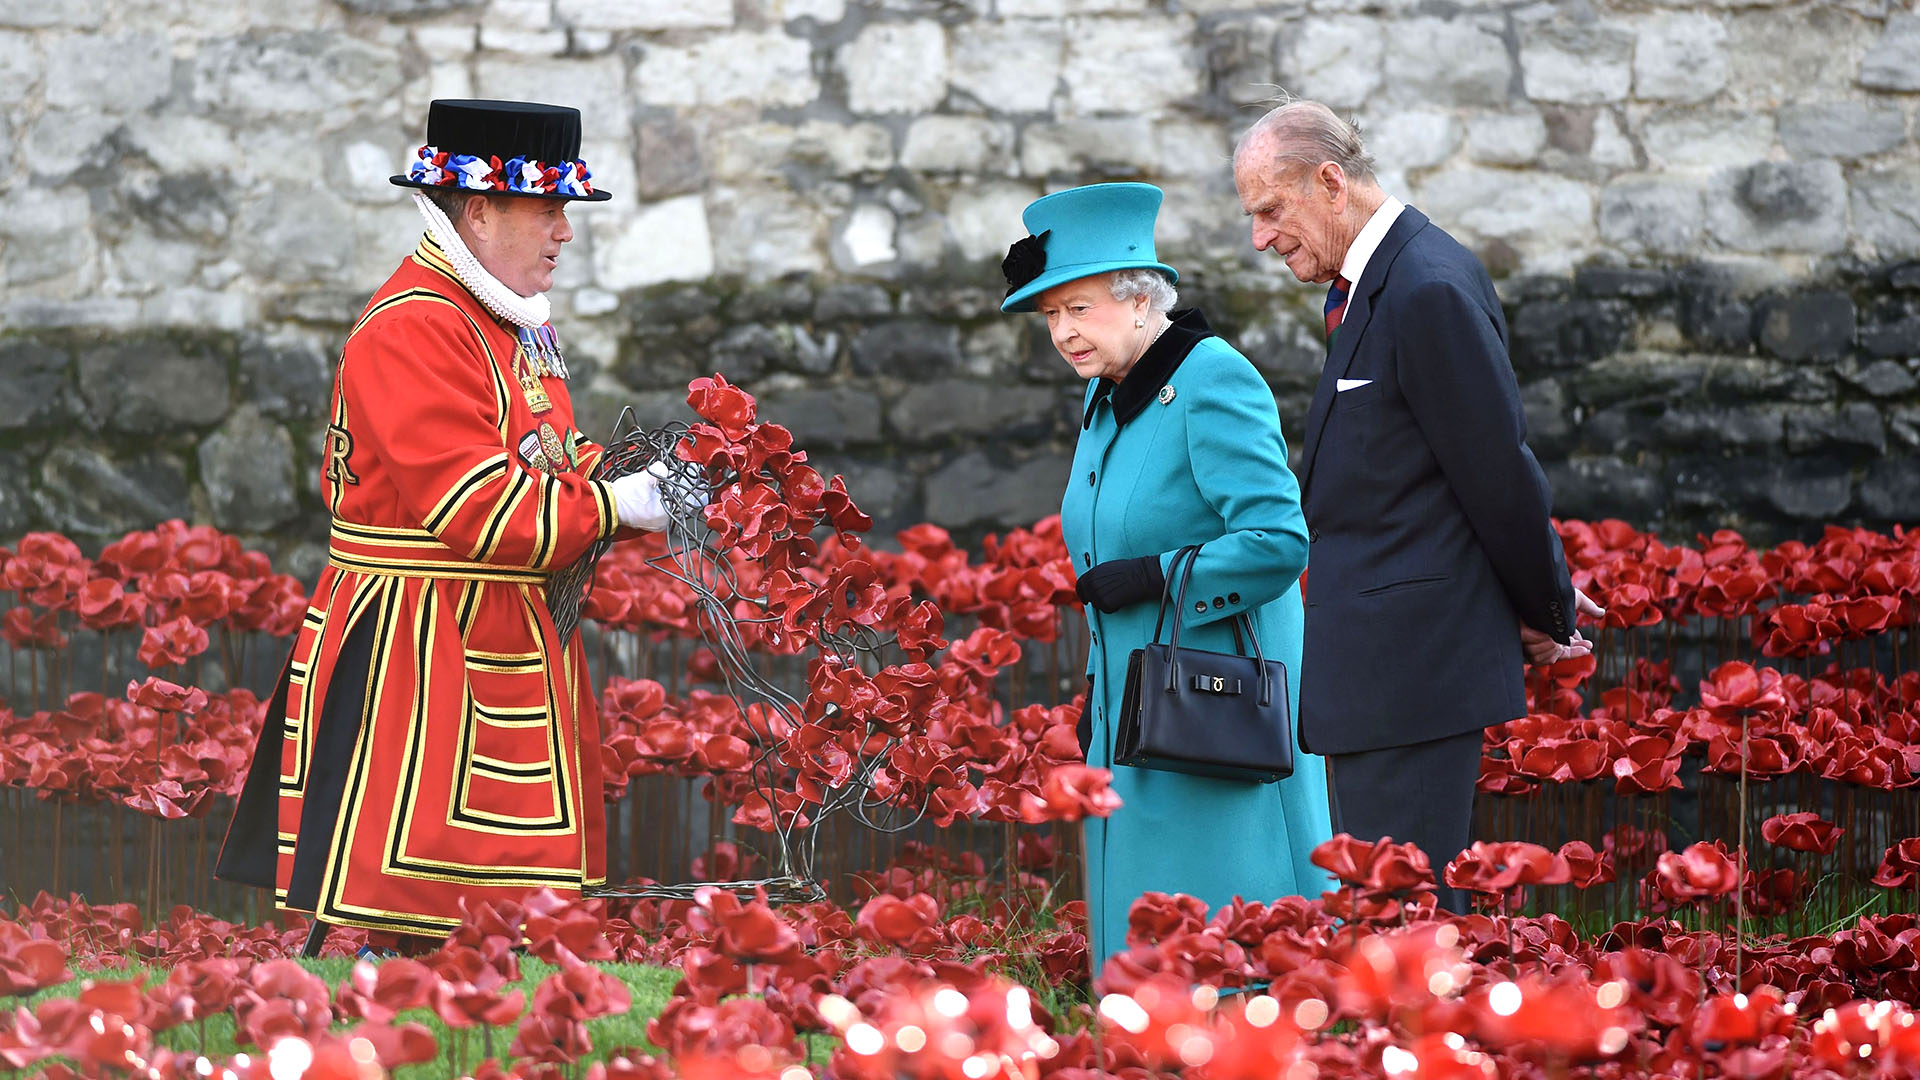  16 de octubre de 2014. La reina Isabel II y el príncipe Felipe ven la instalación de amapolas "Blood Swept Lands and Seas of Red"
